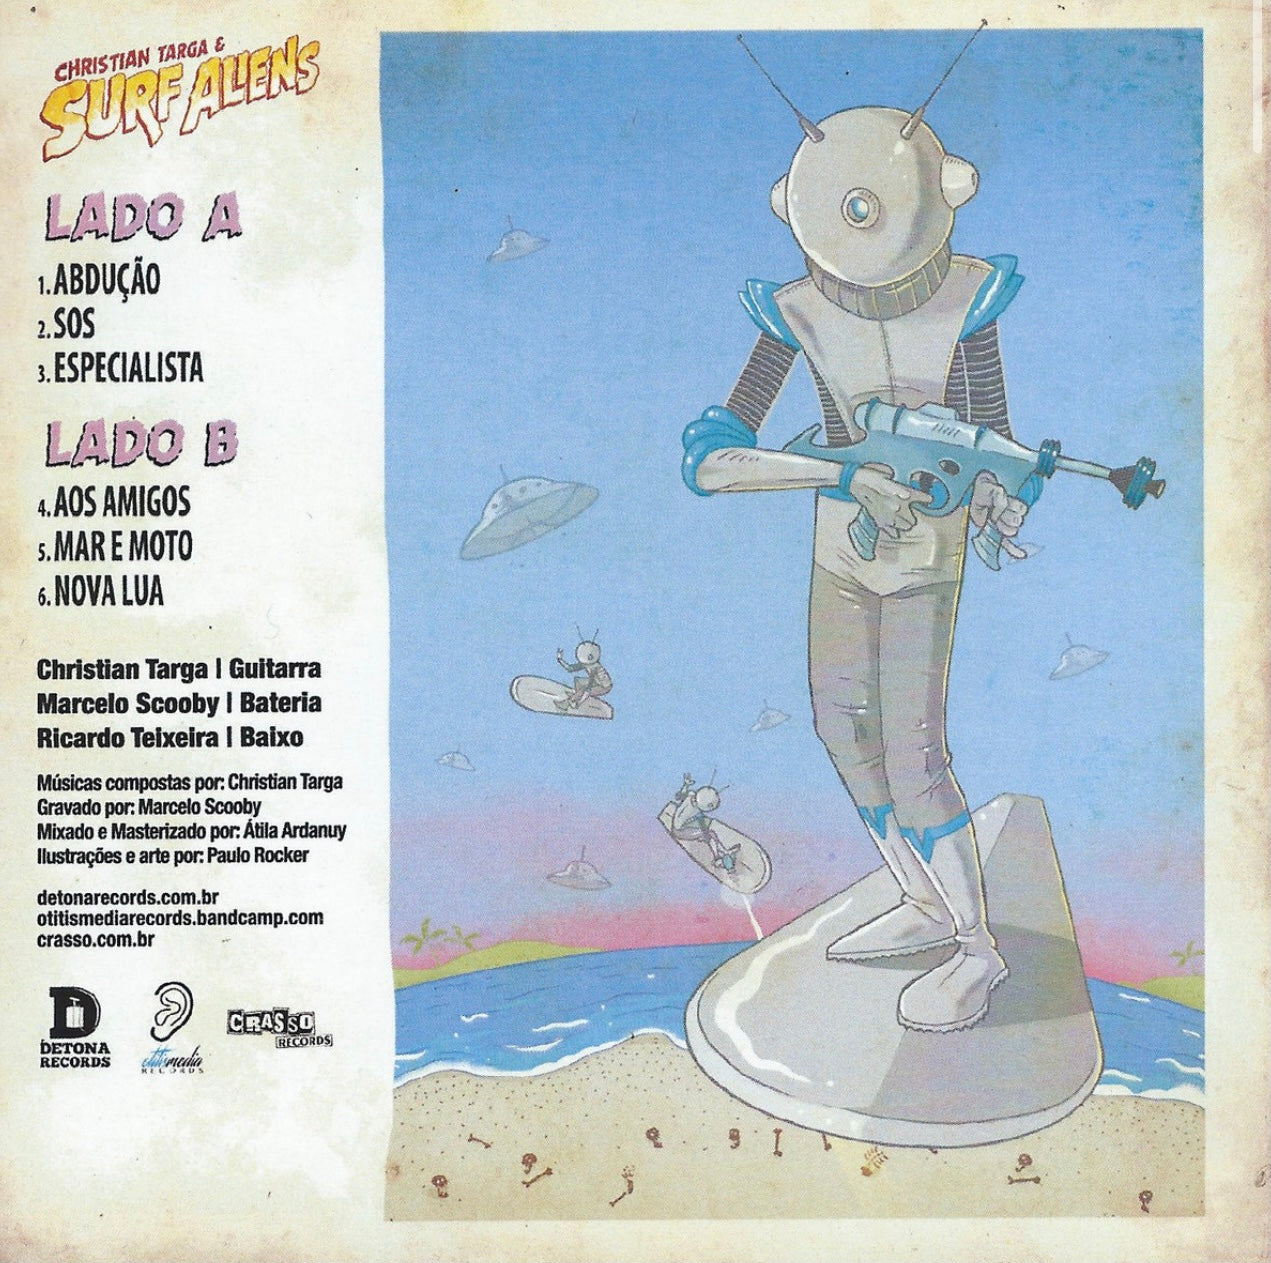 OMR-005 CHRISTIAN TARGA & THE SURF ALIENS (CD/EP, 7 inch Vinyl-Colored)